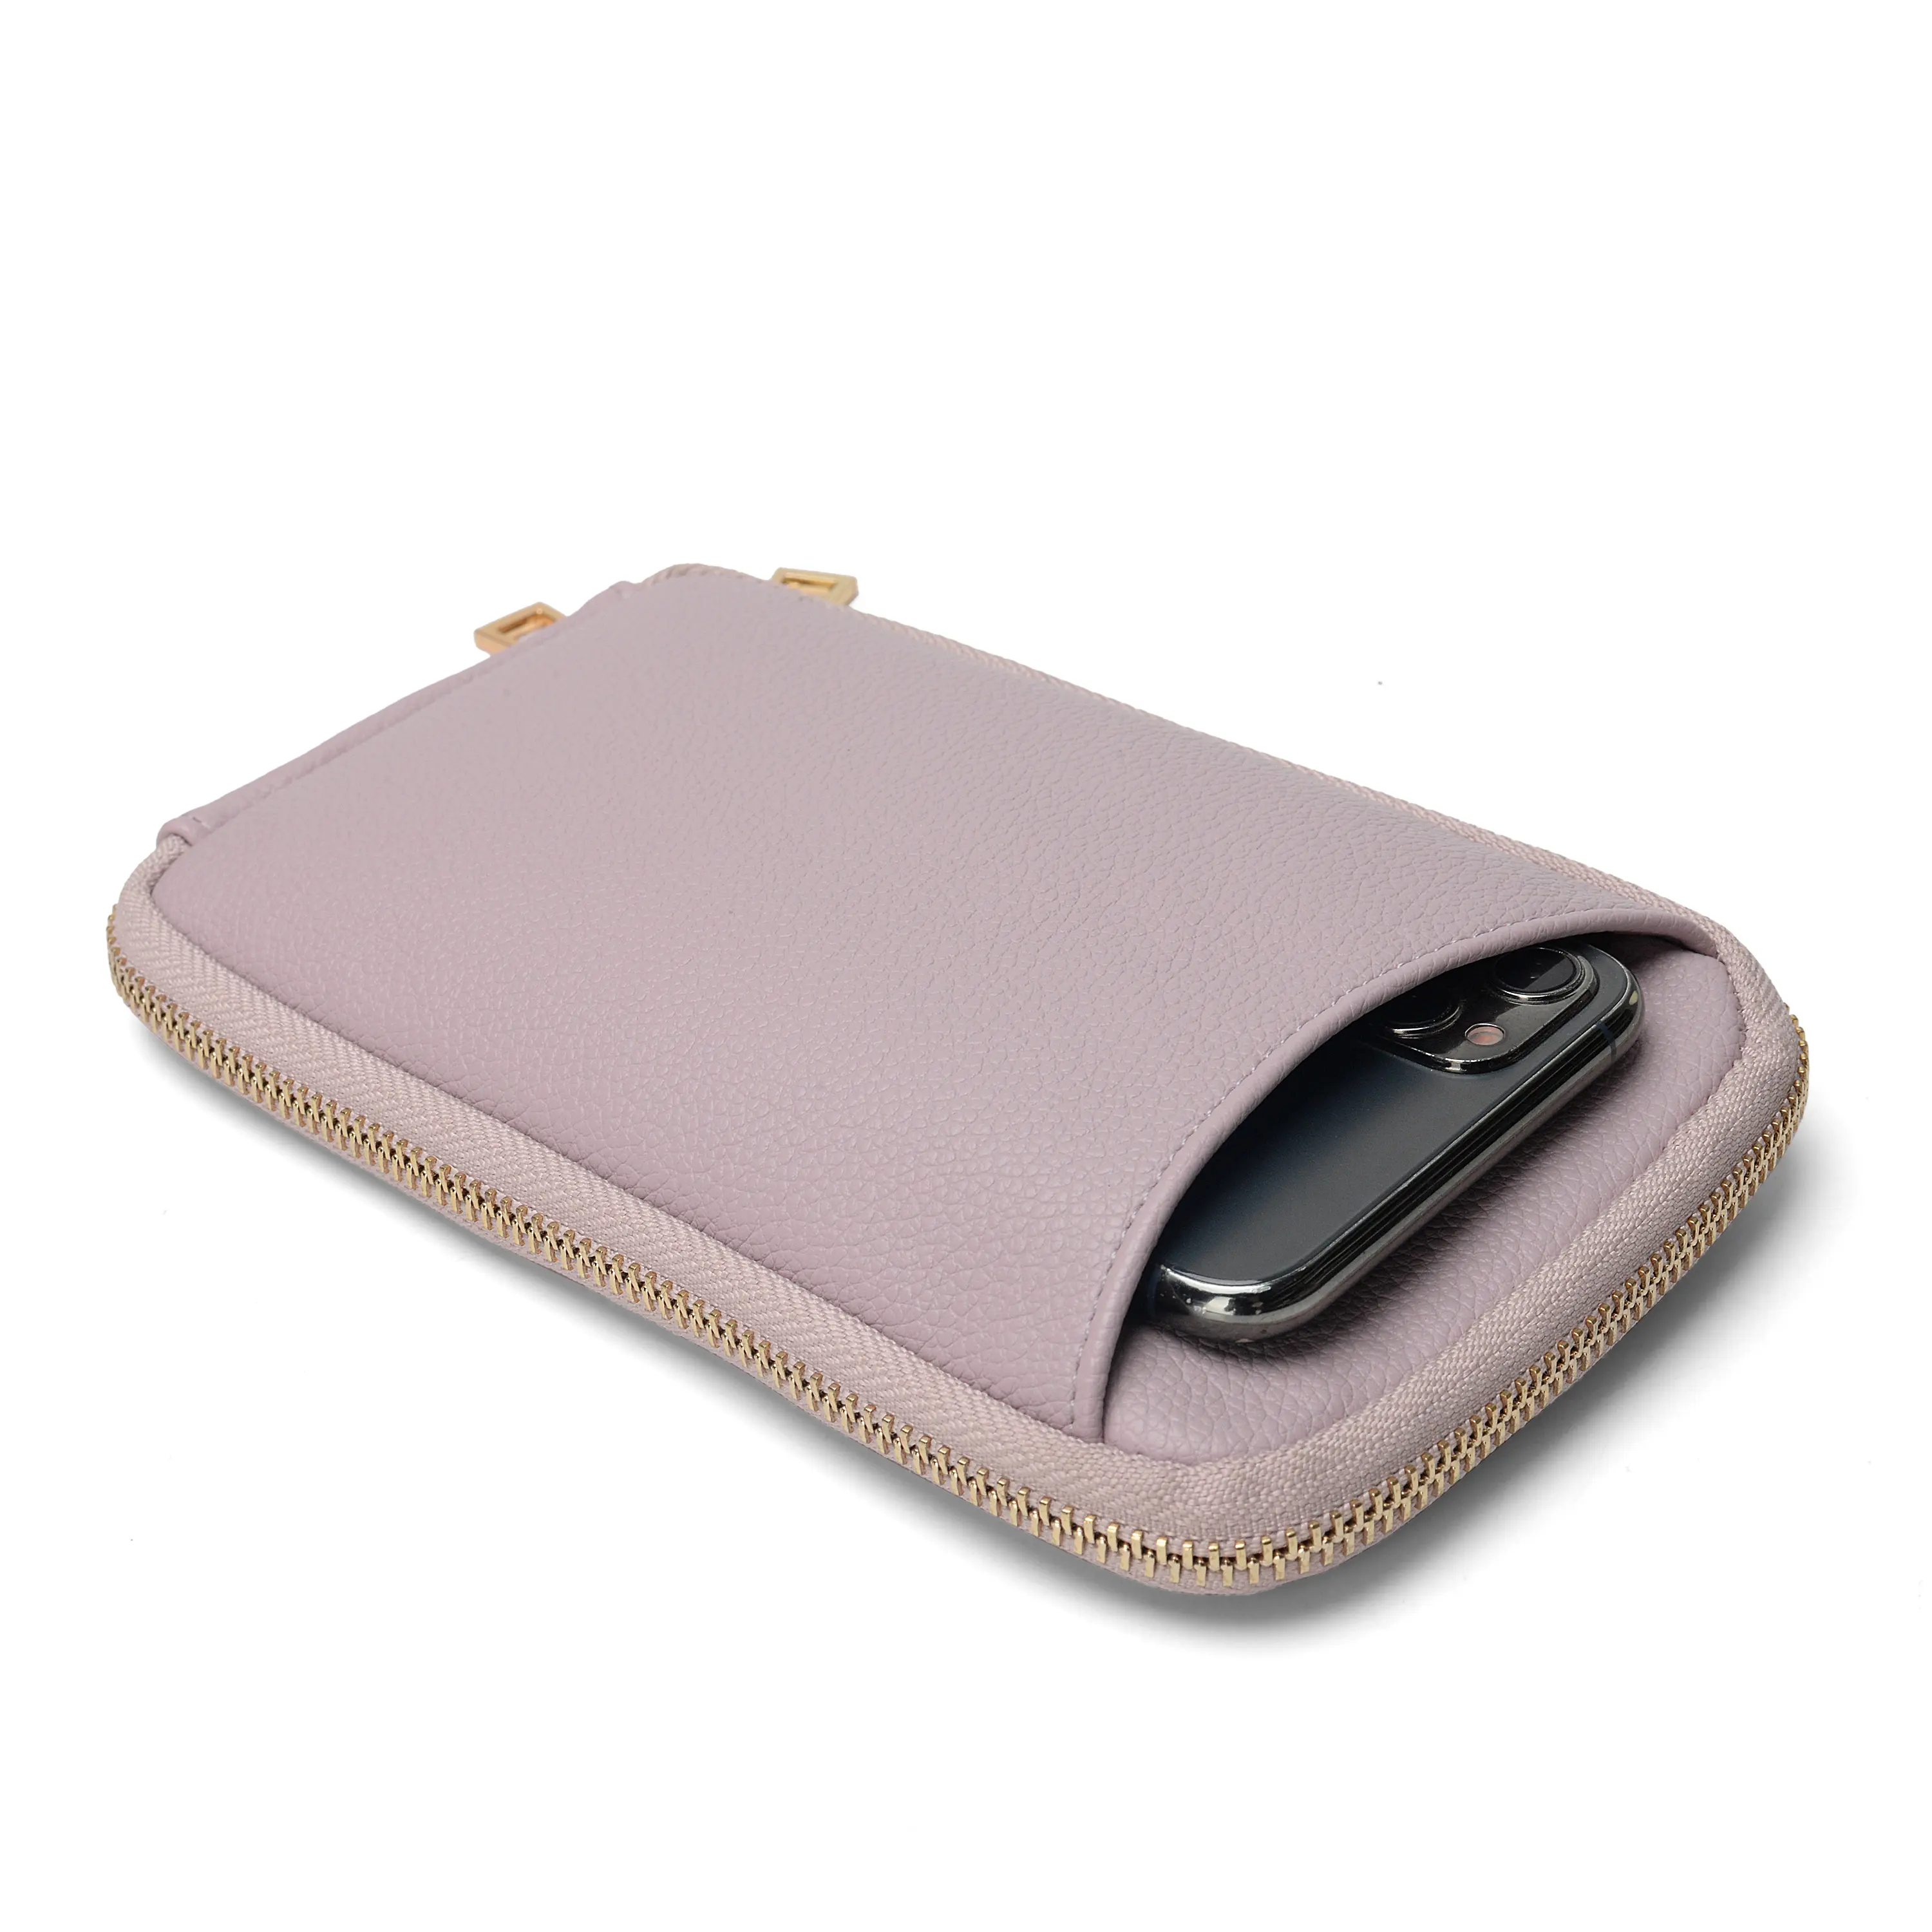 Carteira de viagem para celular em couro com padrão de lichia para presente corporativo de luxo, bolsa de ombro portátil removível para celular